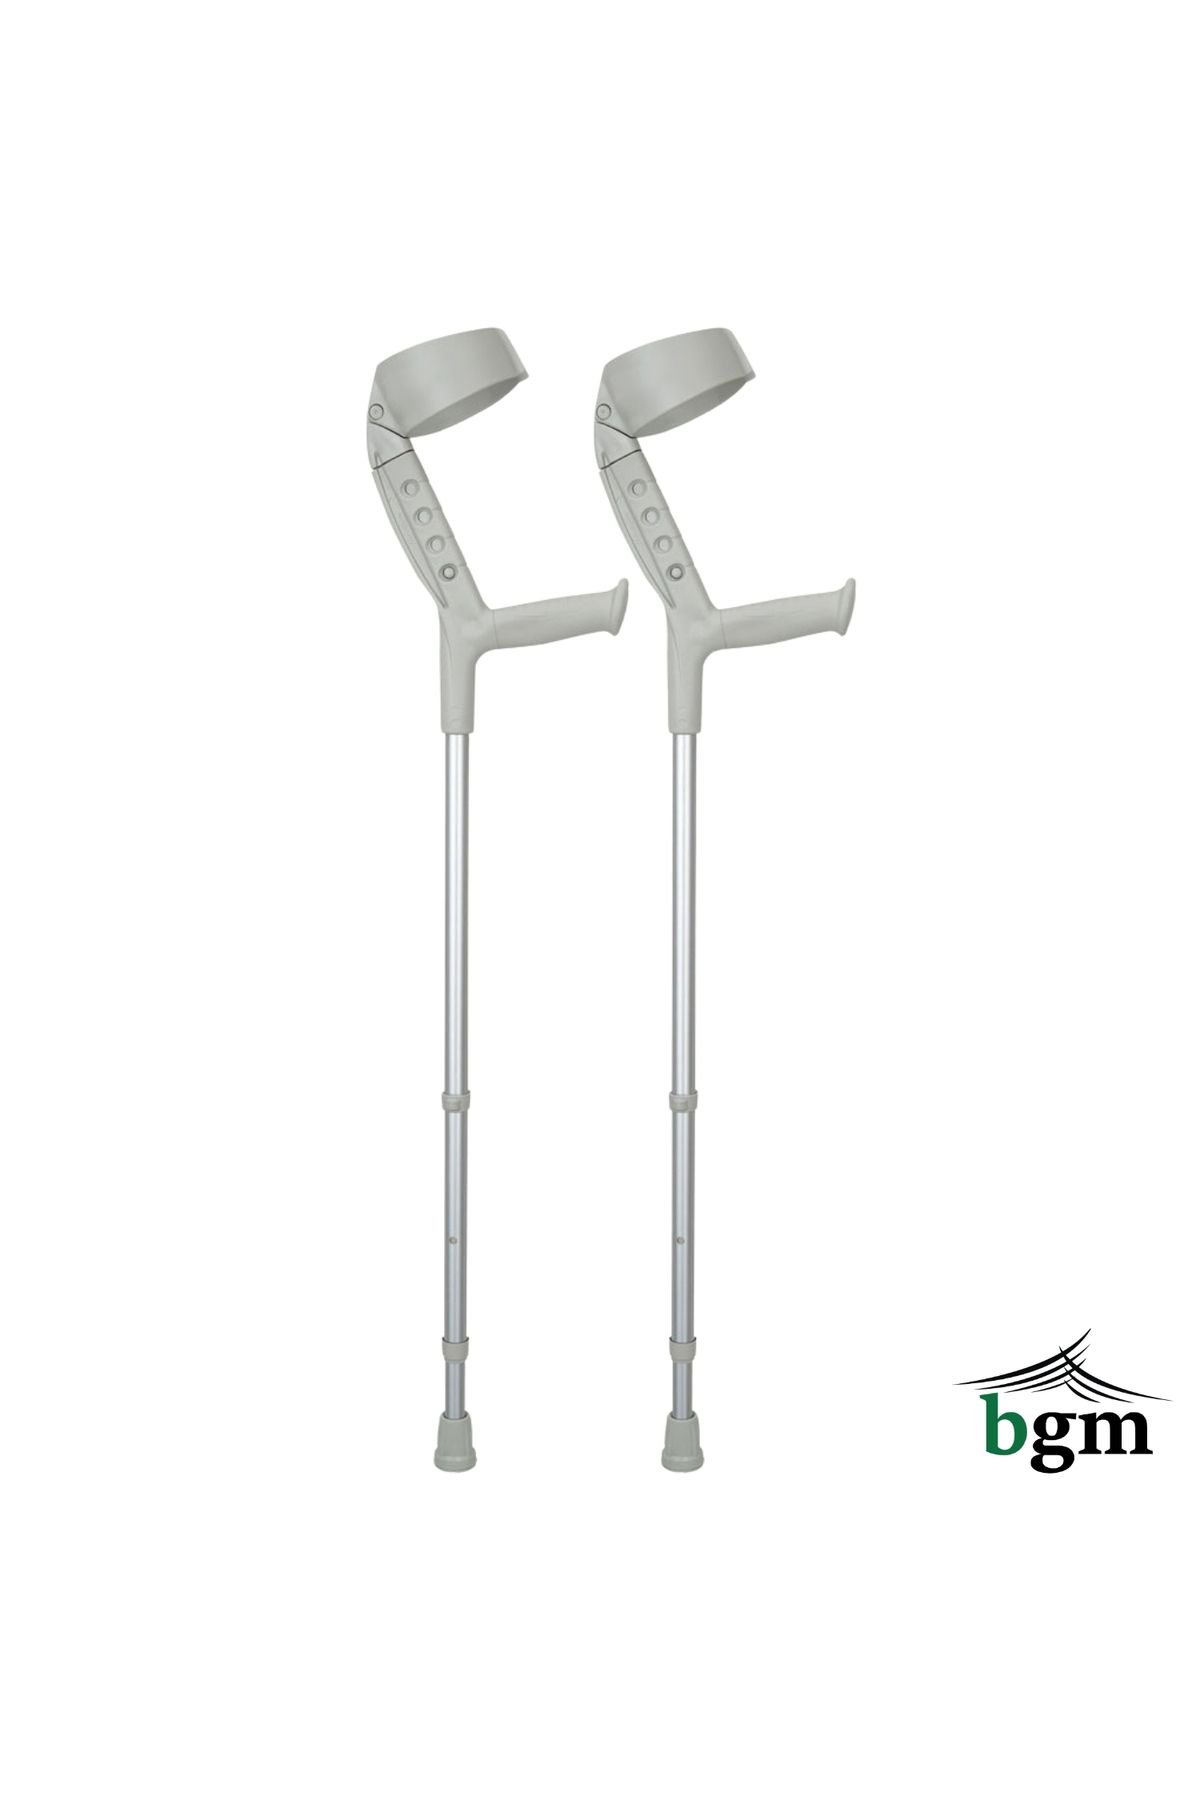 BGM Koltuk Değneği Ayarlanabilir Kanedyen Değnek 1 ÇİFT Yüksek Kalite Ortopedik Yürüme Desteği